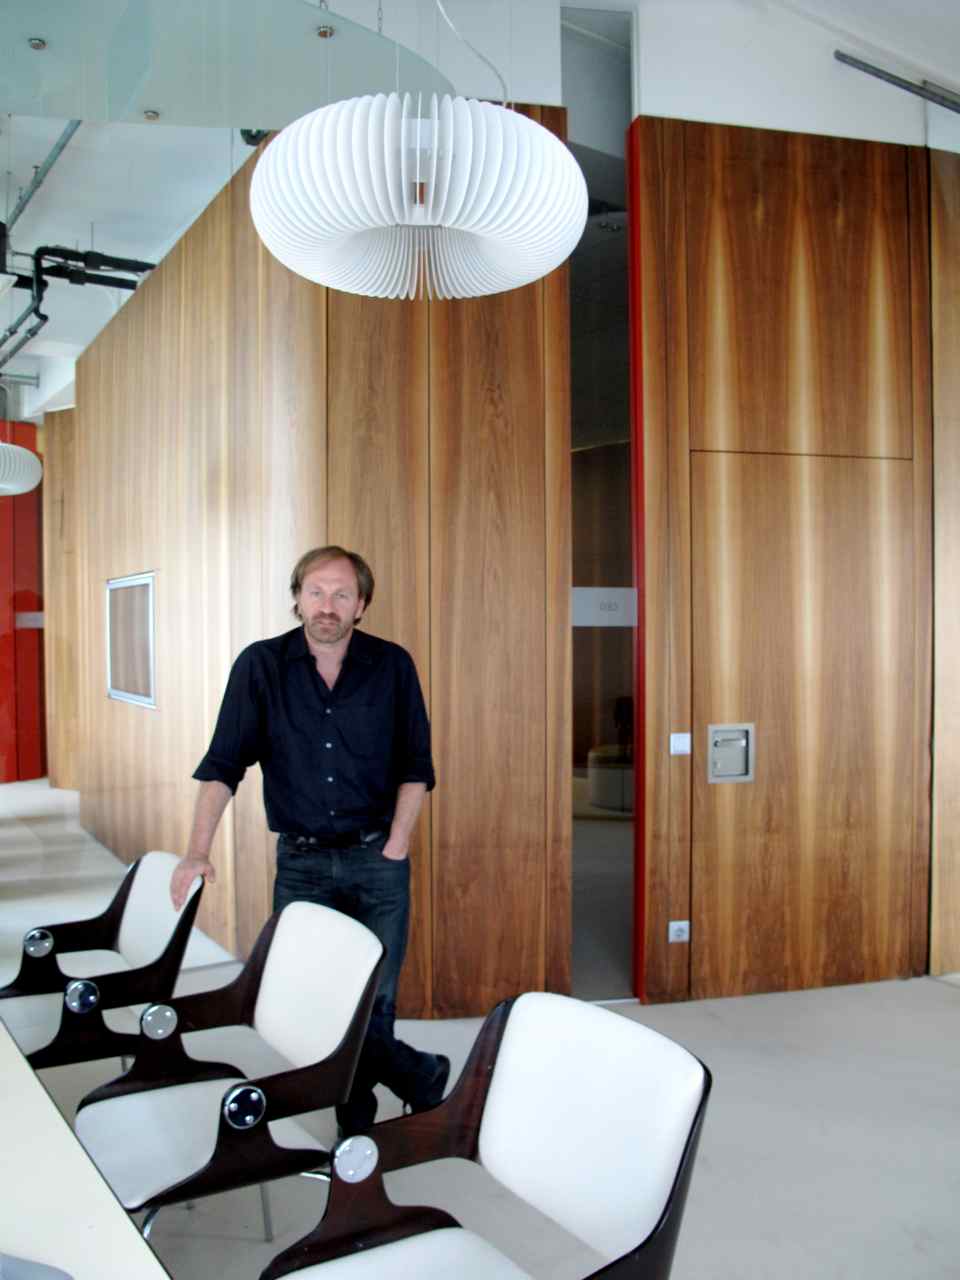 Design Hotels, Claus Sendlinger